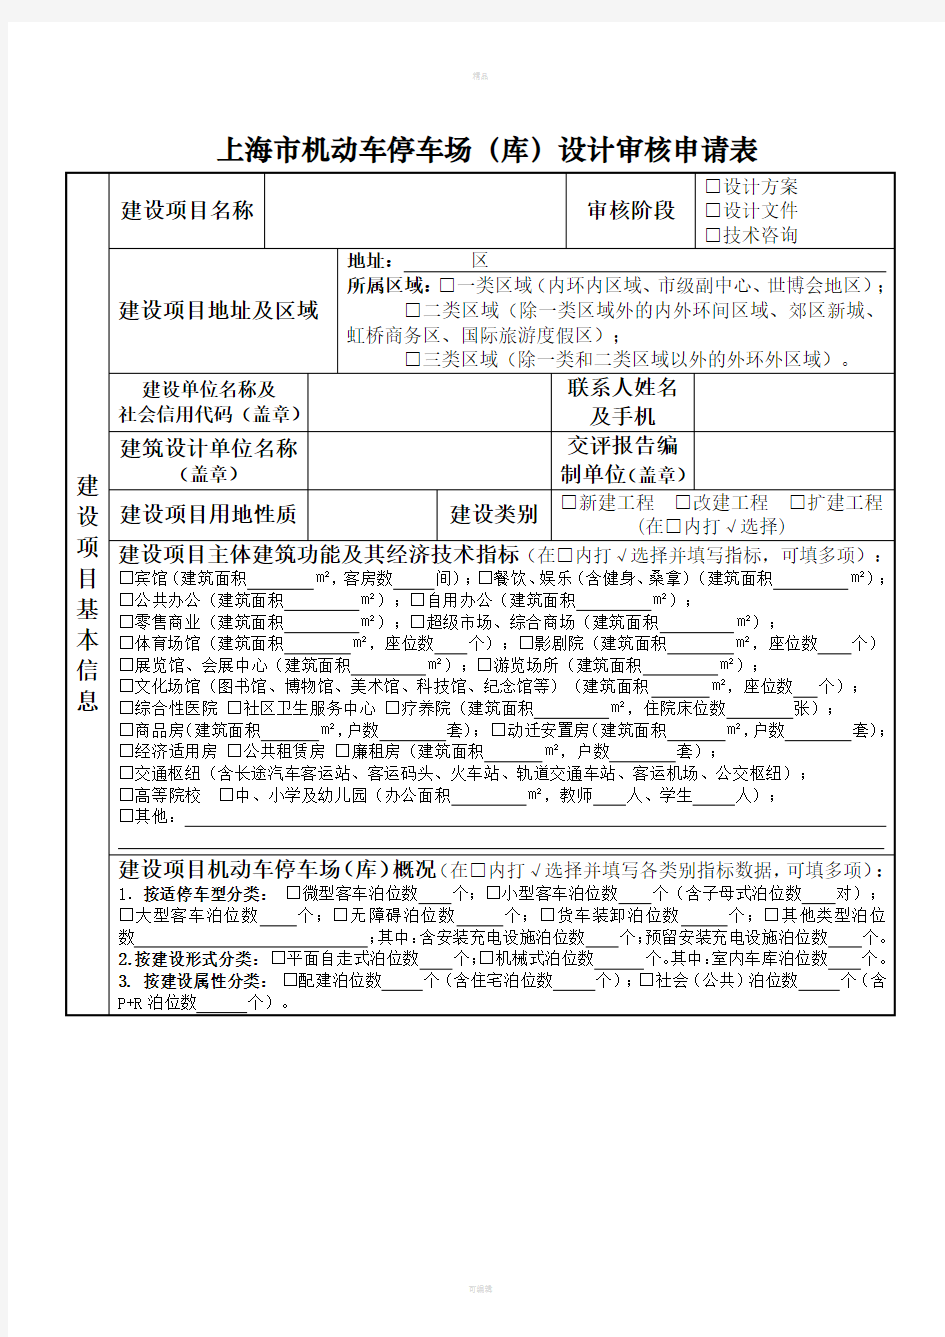 上海机动车停车场库设计审核申请表